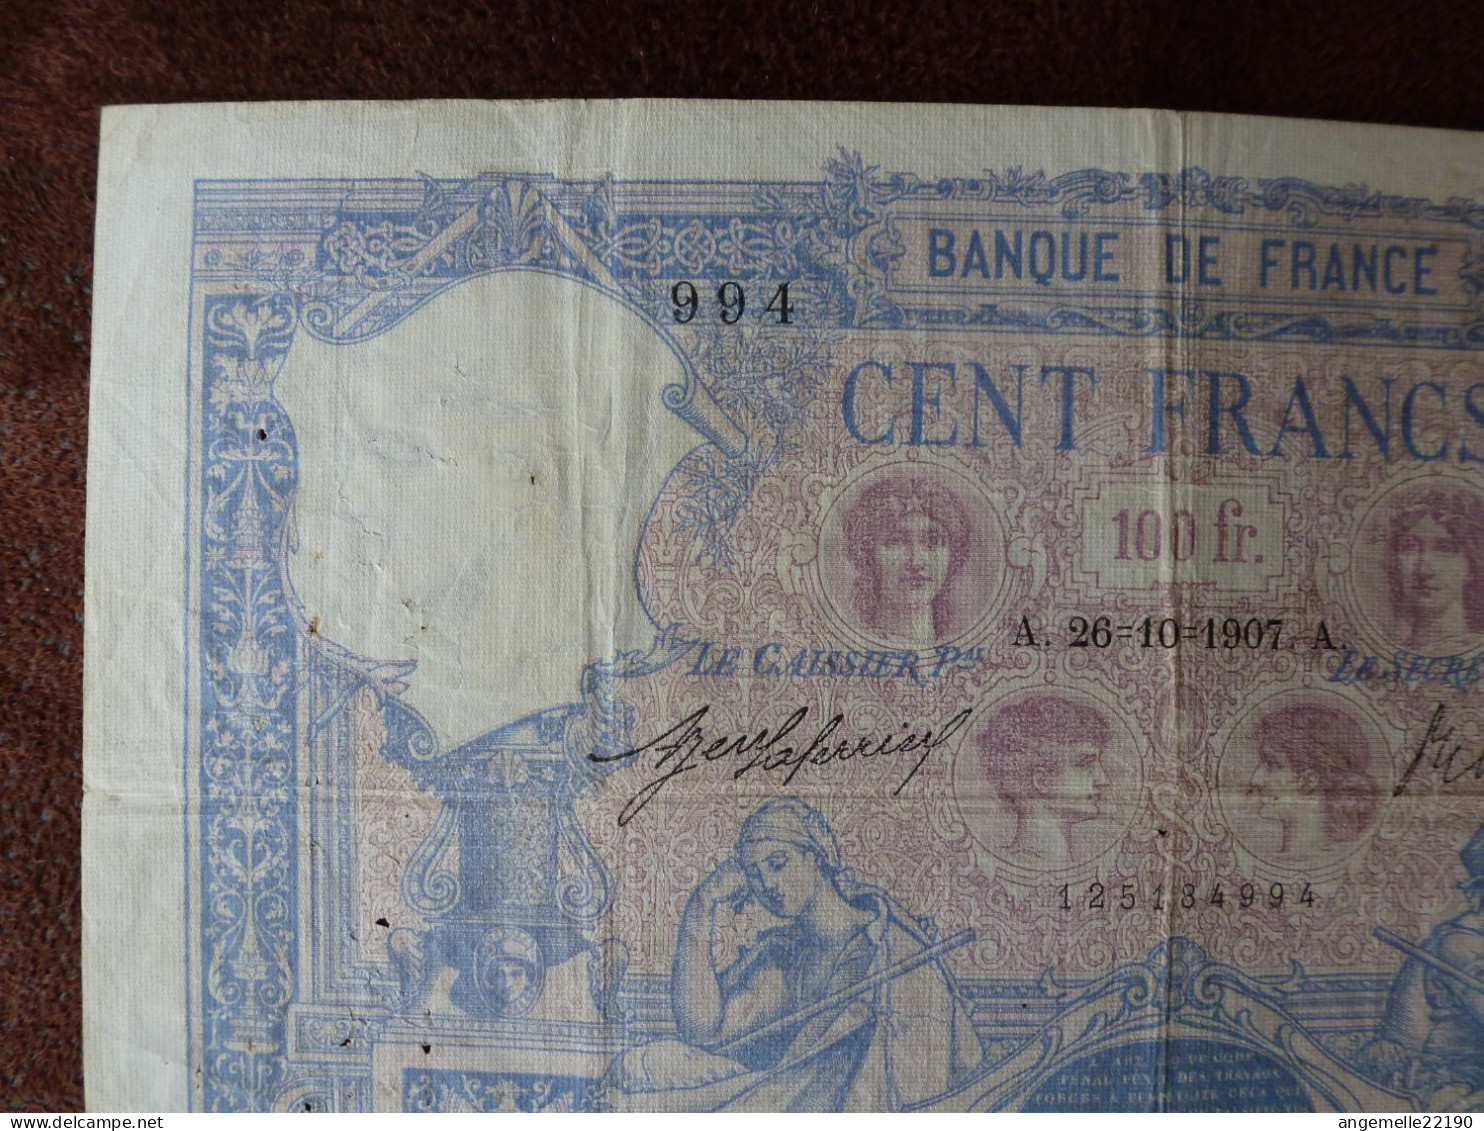 1 Billets De  100 FR  BLEU  DE 1907 / FAY 21/22  TTB LETTRE A - ...-1889 Anciens Francs Circulés Au XIXème